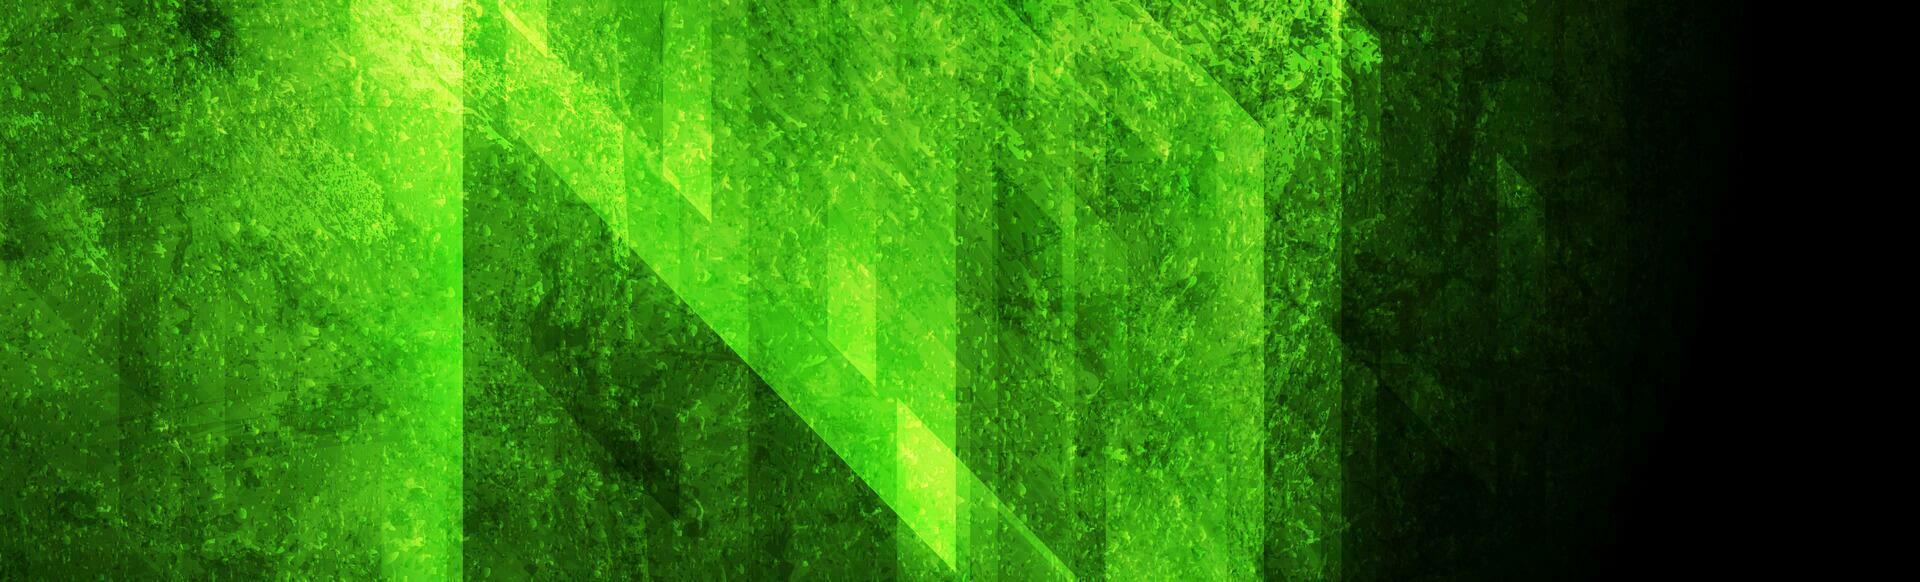 brillant vert grunge géométrique abstrait bannière conception vecteur